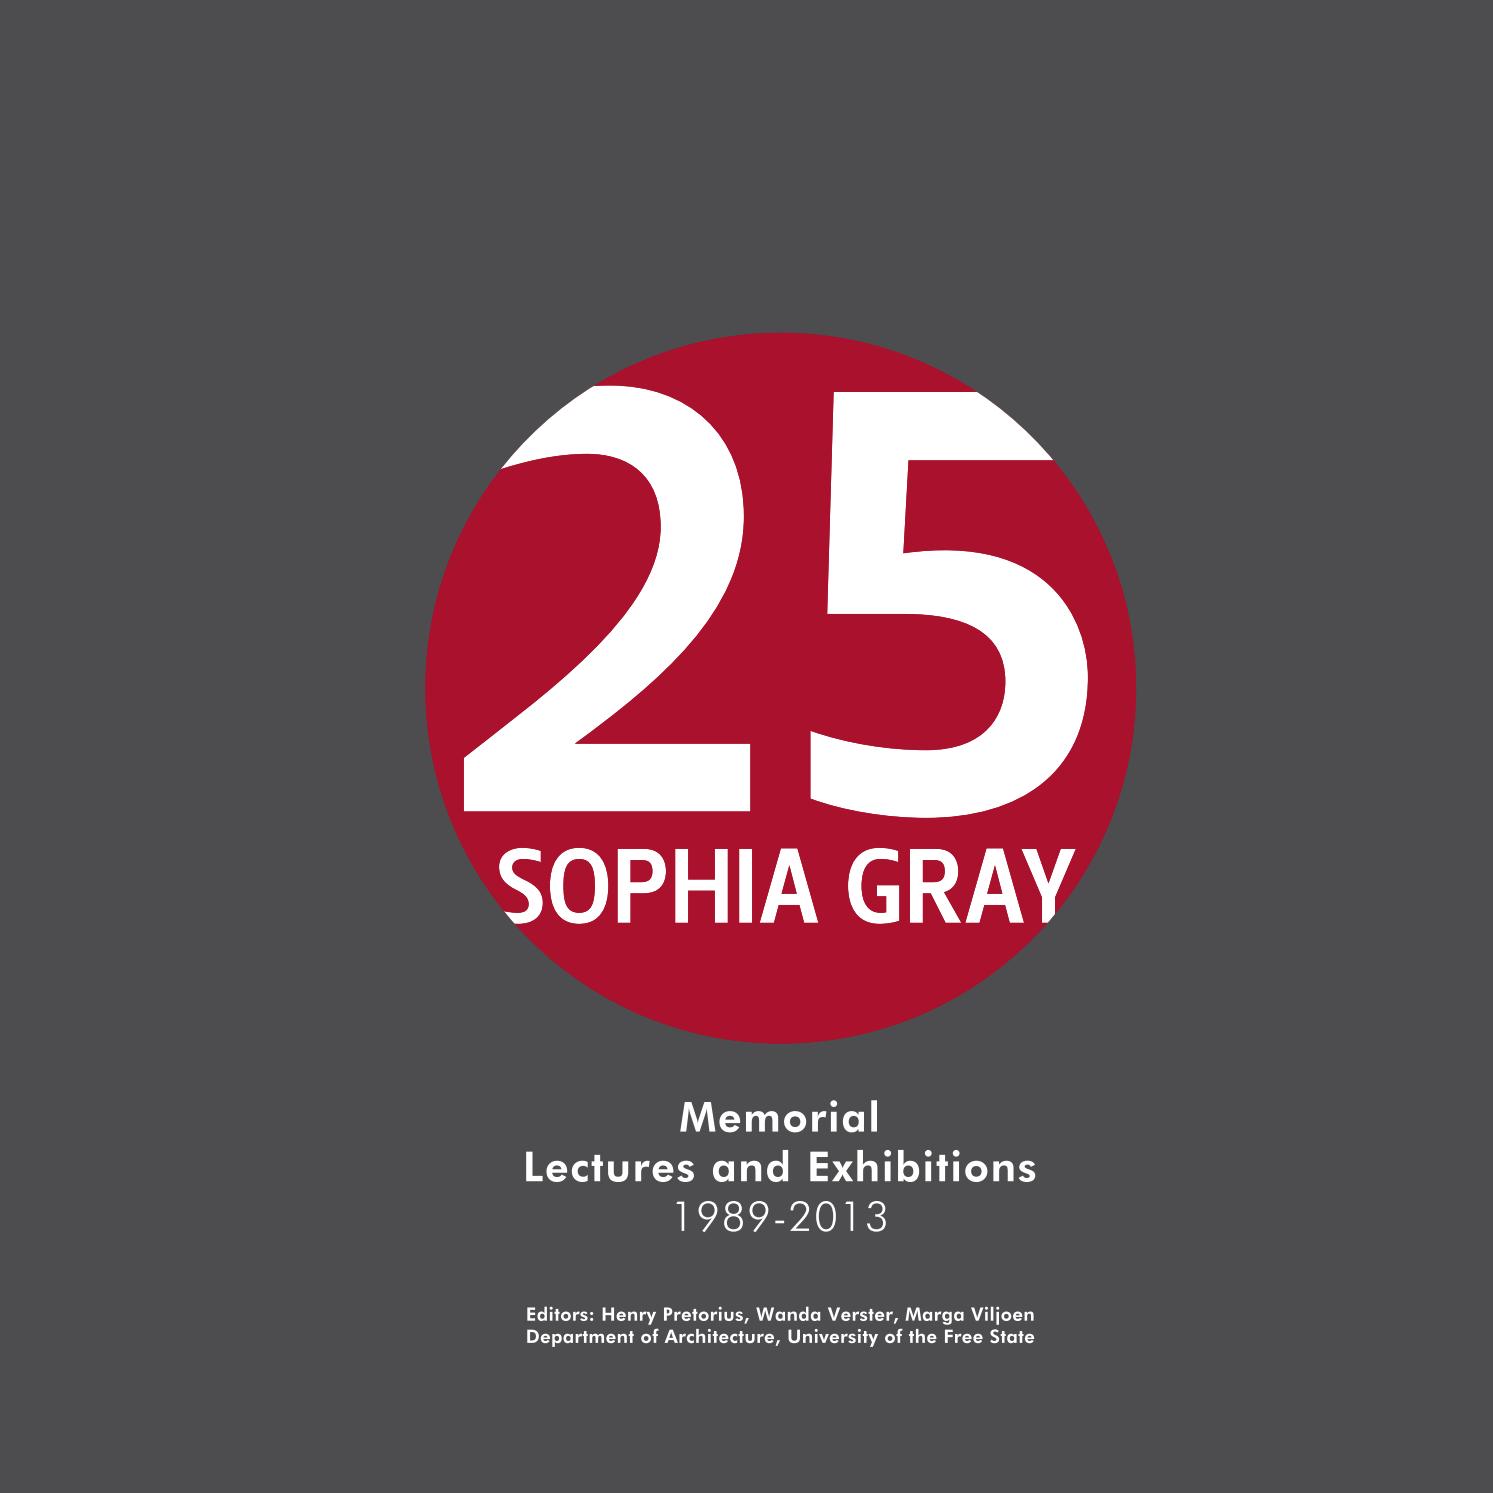 Sophia gray Vol 1